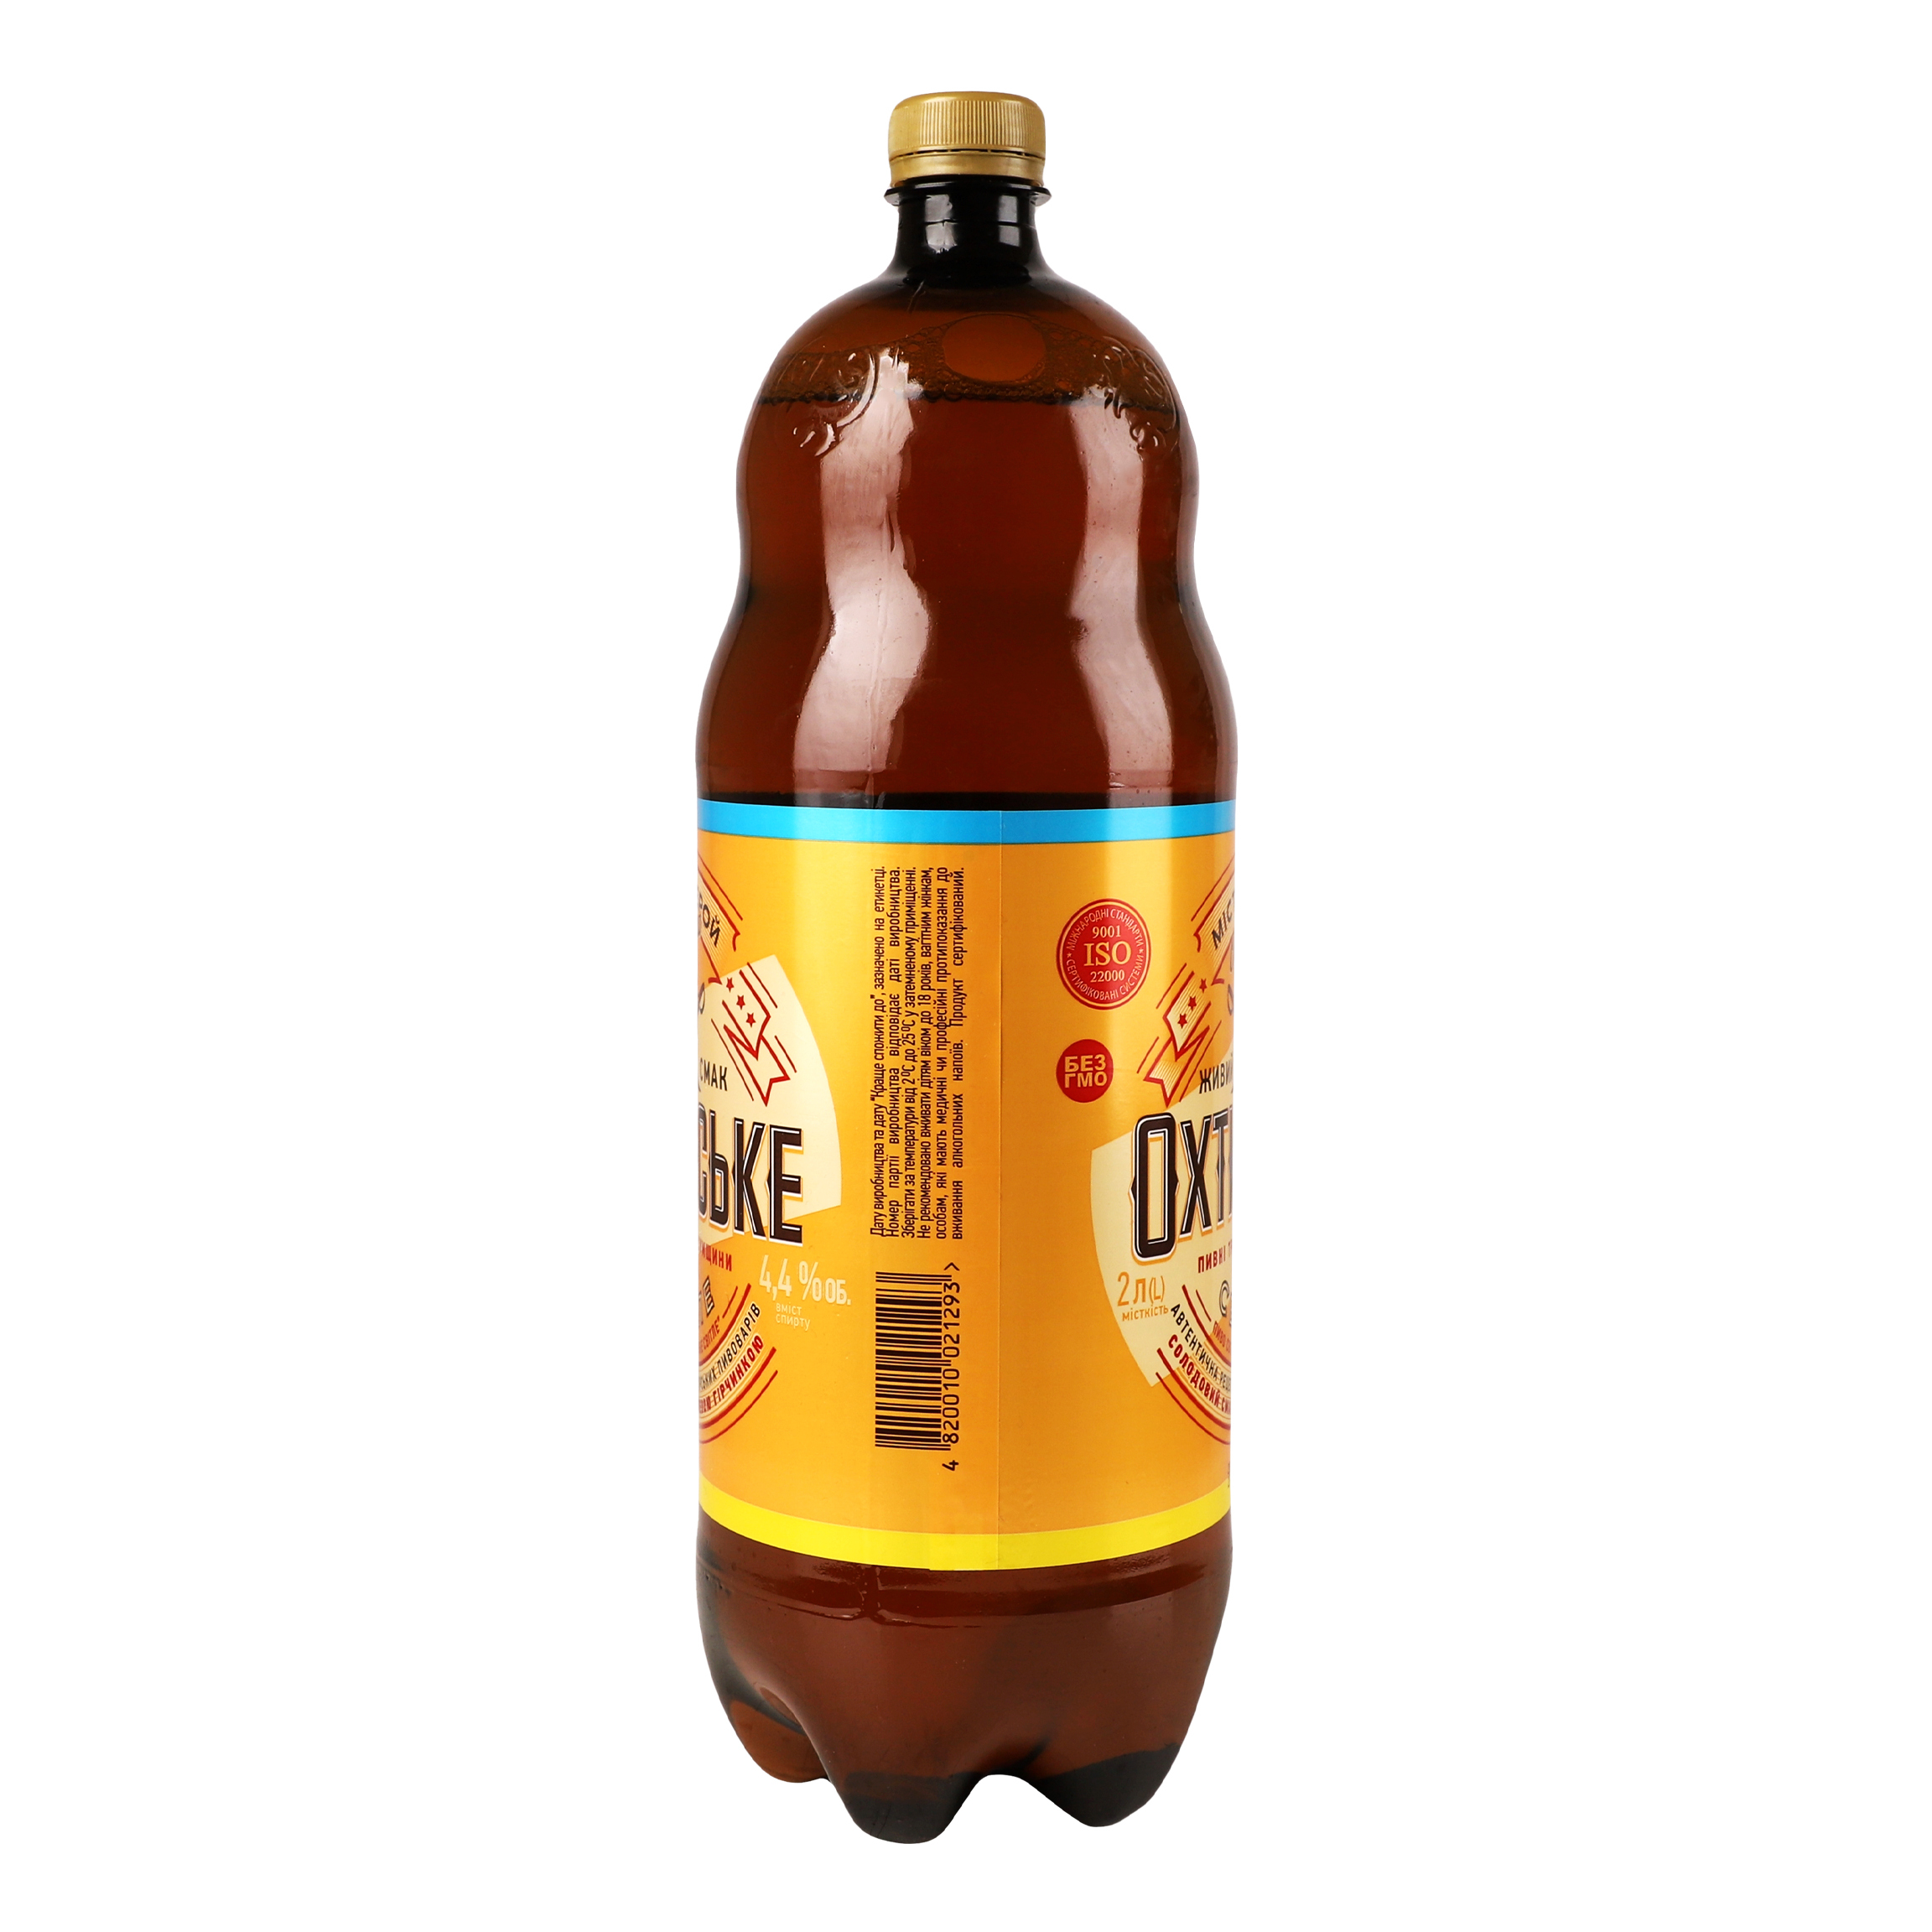 Пиво Охтирське светлое 4.4% 2 л - фото 3